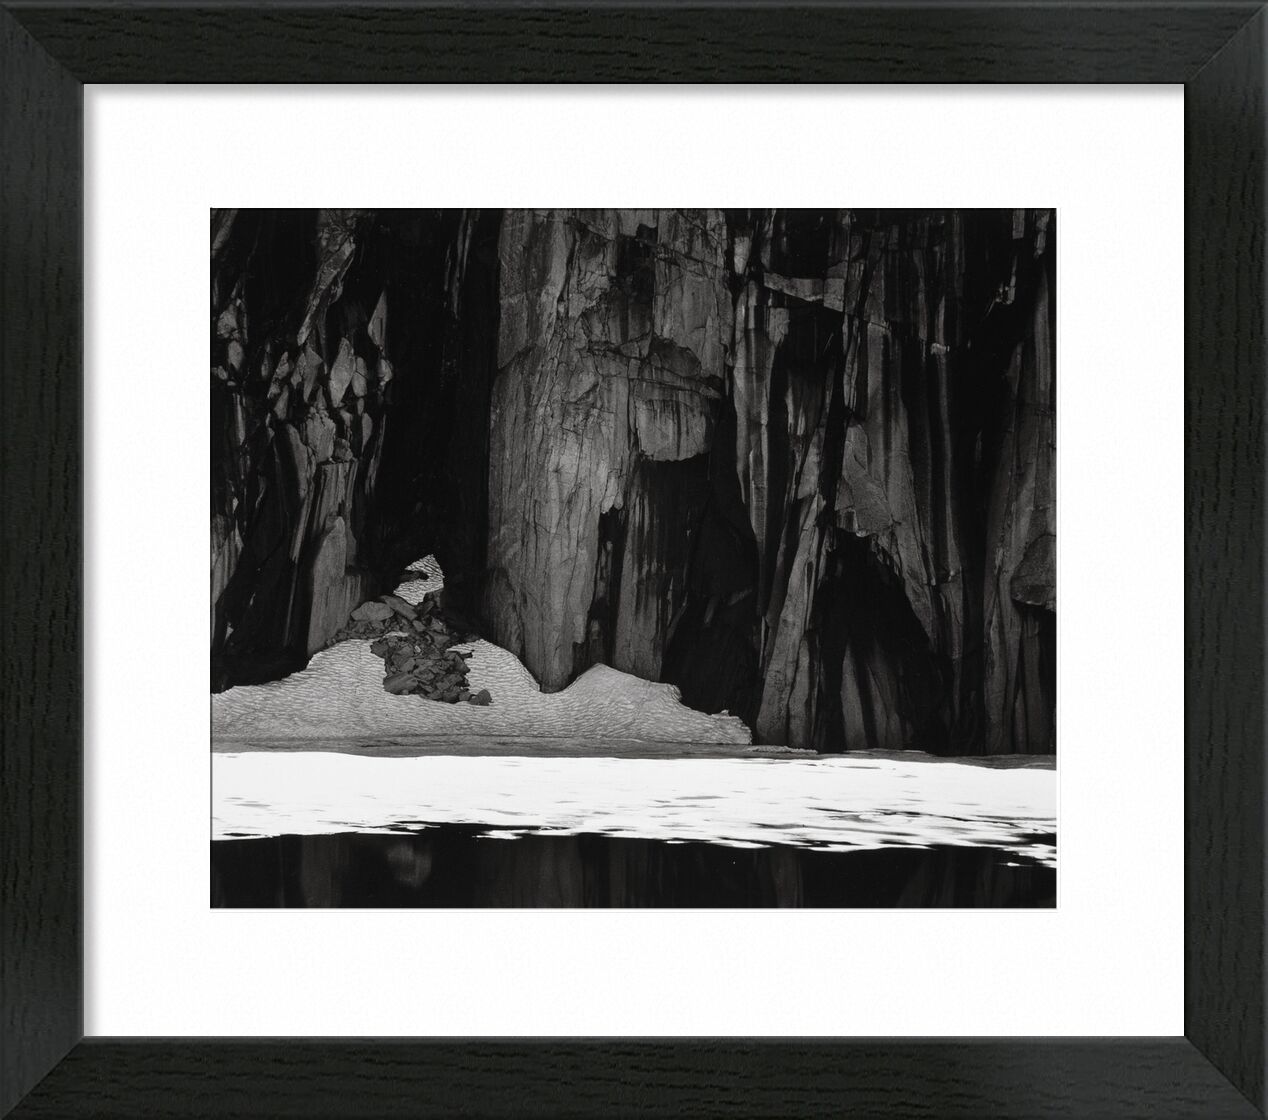 Gefrorener See und Klippen, Kaweah Gap, Sierra Nevada, Kalifornien, 1932 - Ansel Adams von Bildende Kunst, Prodi Art, ANSEL ADAMS, adams, See, Klippe, Winter, kalt, Schnee, gefrorener See